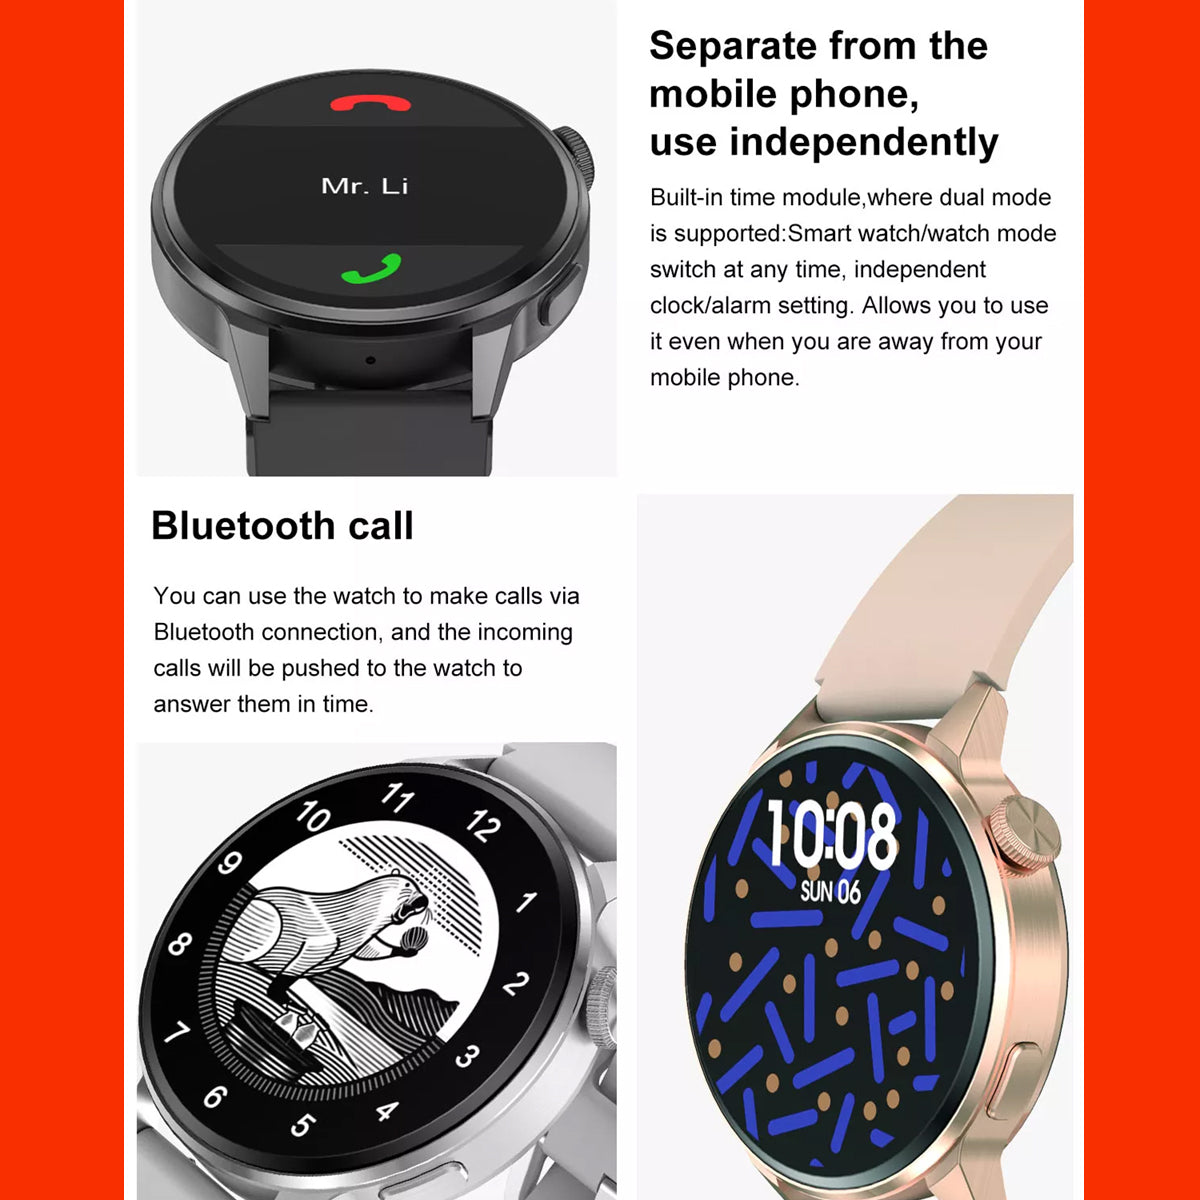 Smart Watch Reloj Inteligente Fralugio Dt4+ Metal De Lujo HD